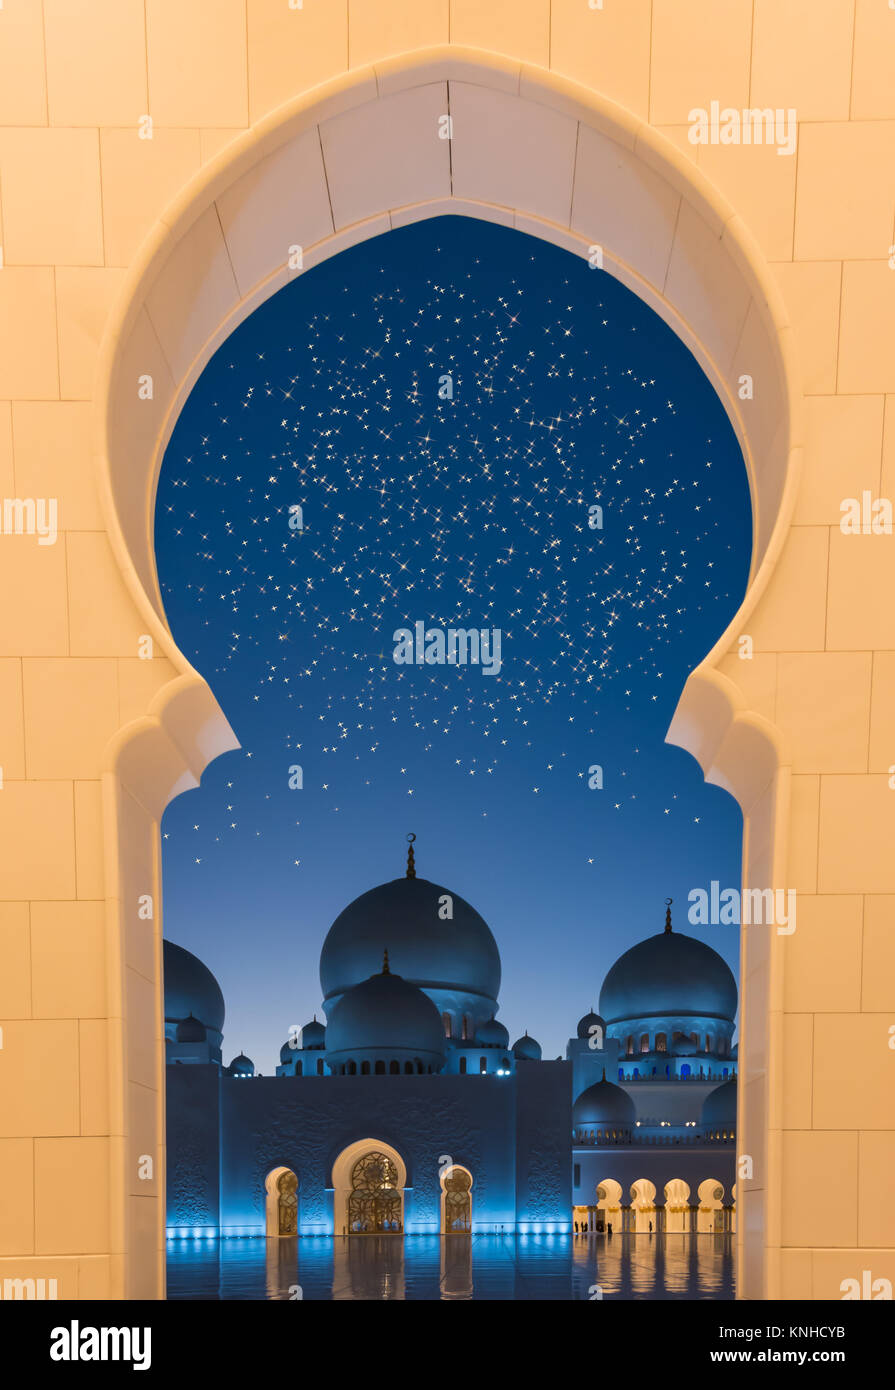 Arabische Nächte mit Sternenhimmel. Stockfoto